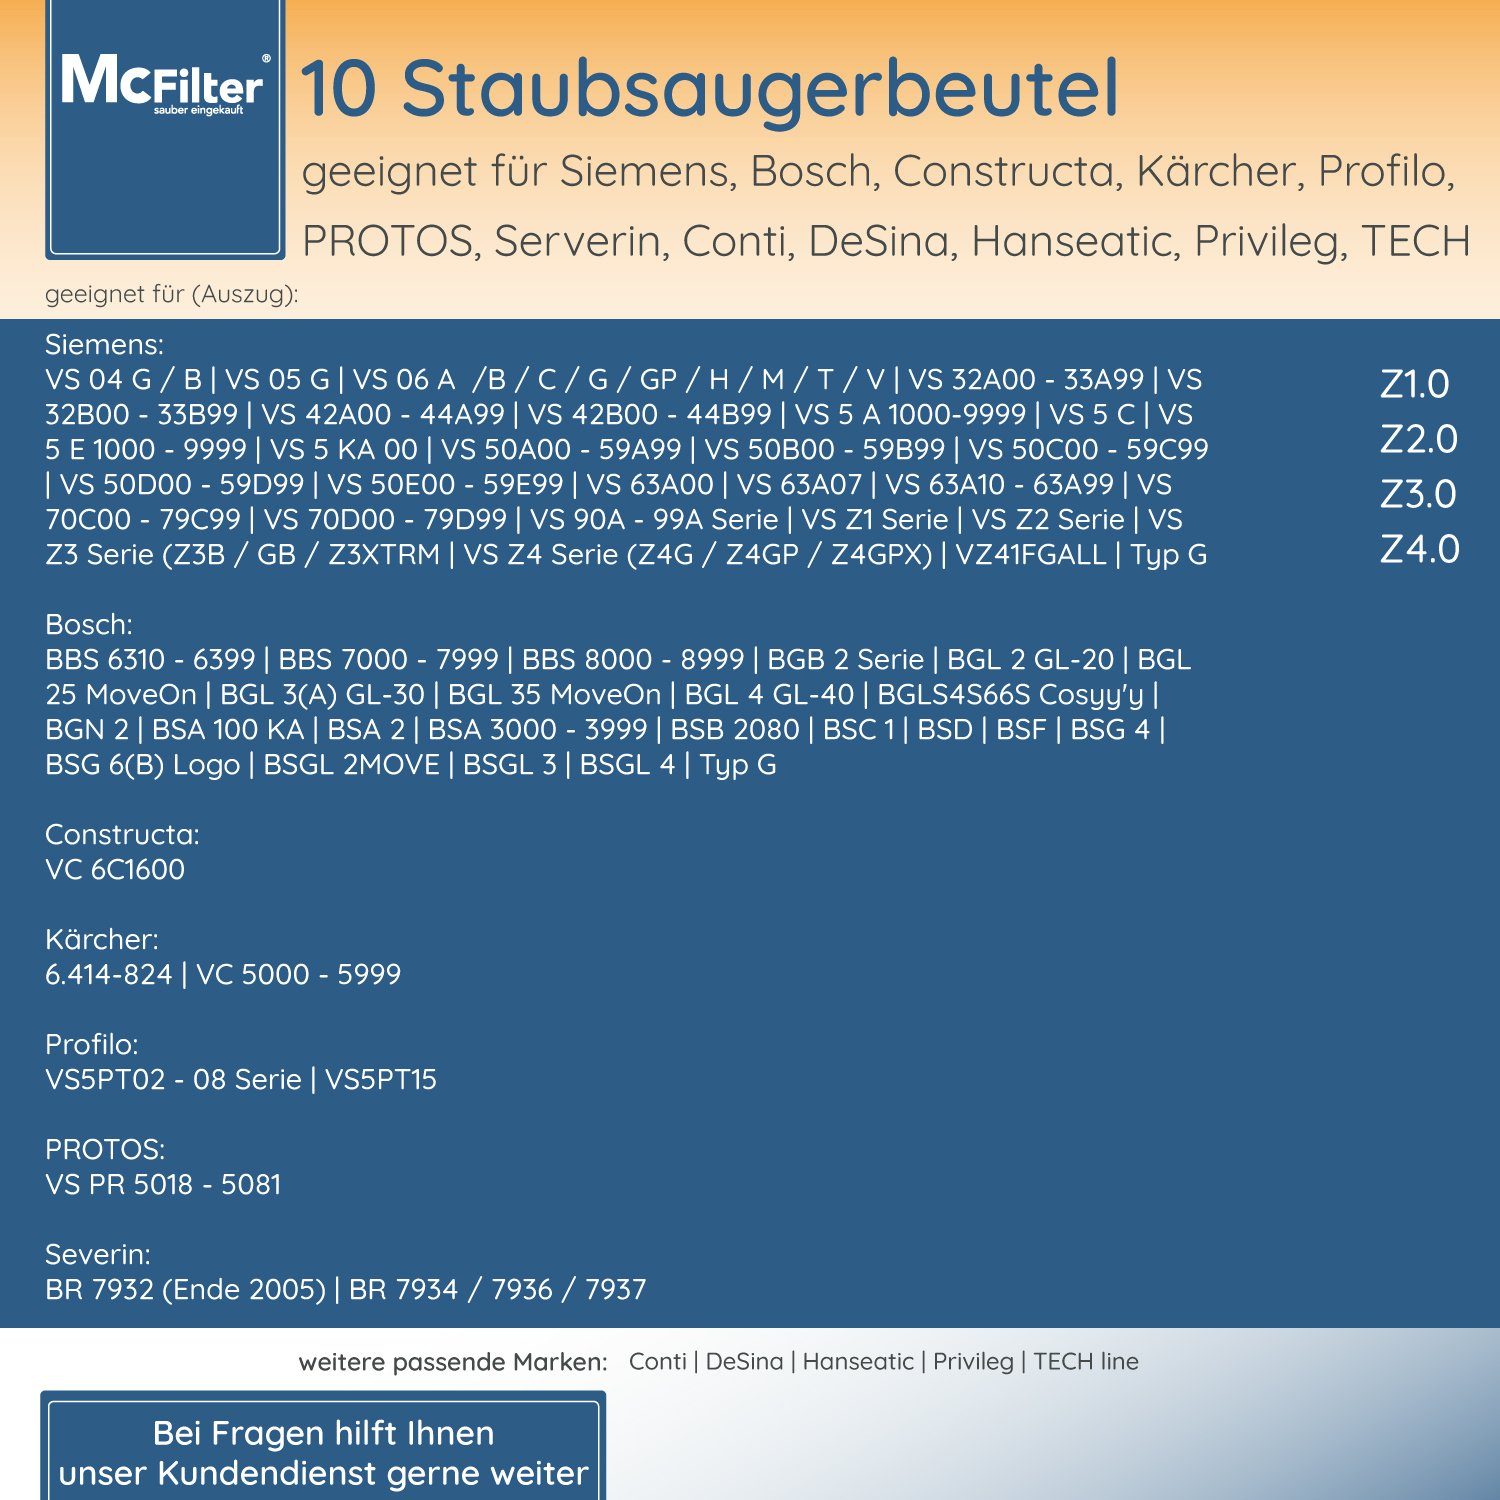 McFilter Staubsaugerbeutel geeignet Filter wie Staubsauger, 5-lagiger mit für Hygieneverschluss, BBZ41FGALL, St., Bosch, BGL6TSIL Staubbeutel 10 inkl. für passend